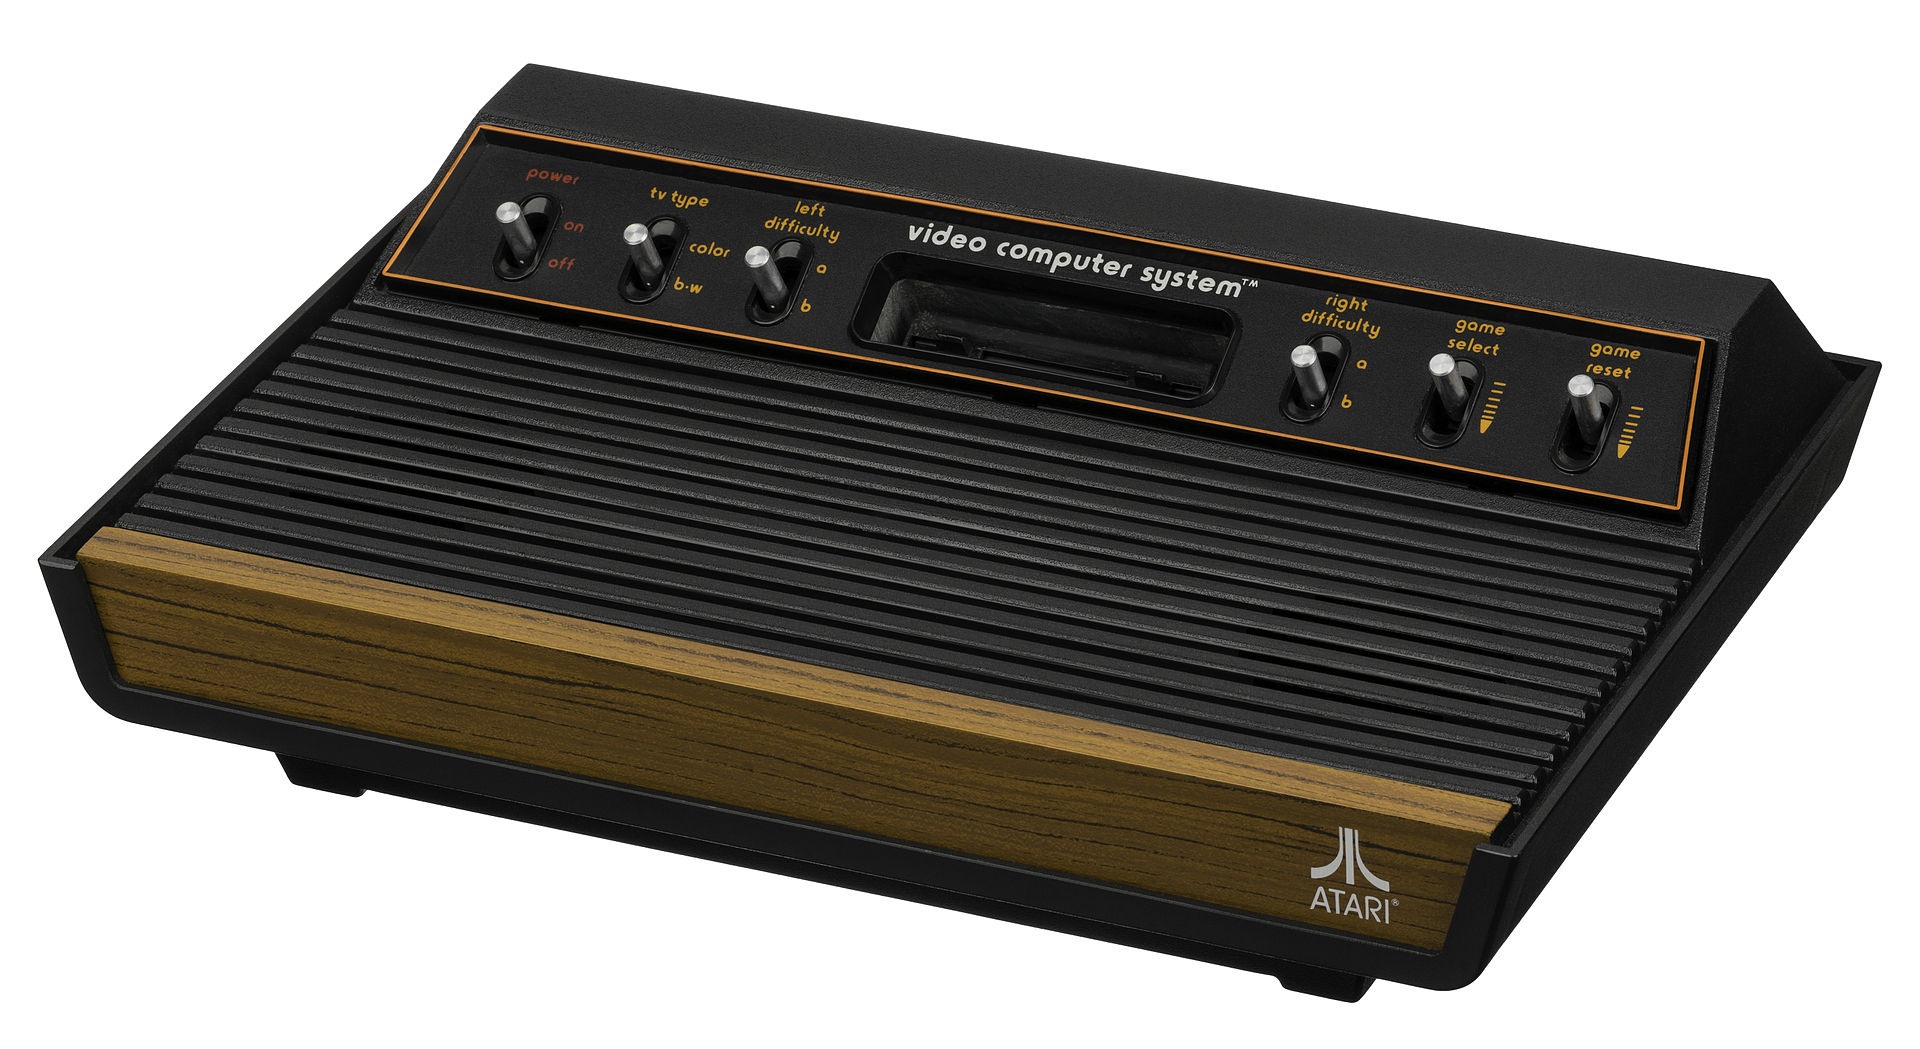 #Medienberichte: LEGO-Modell des Atari 2600 soll im August 2022 erscheinen